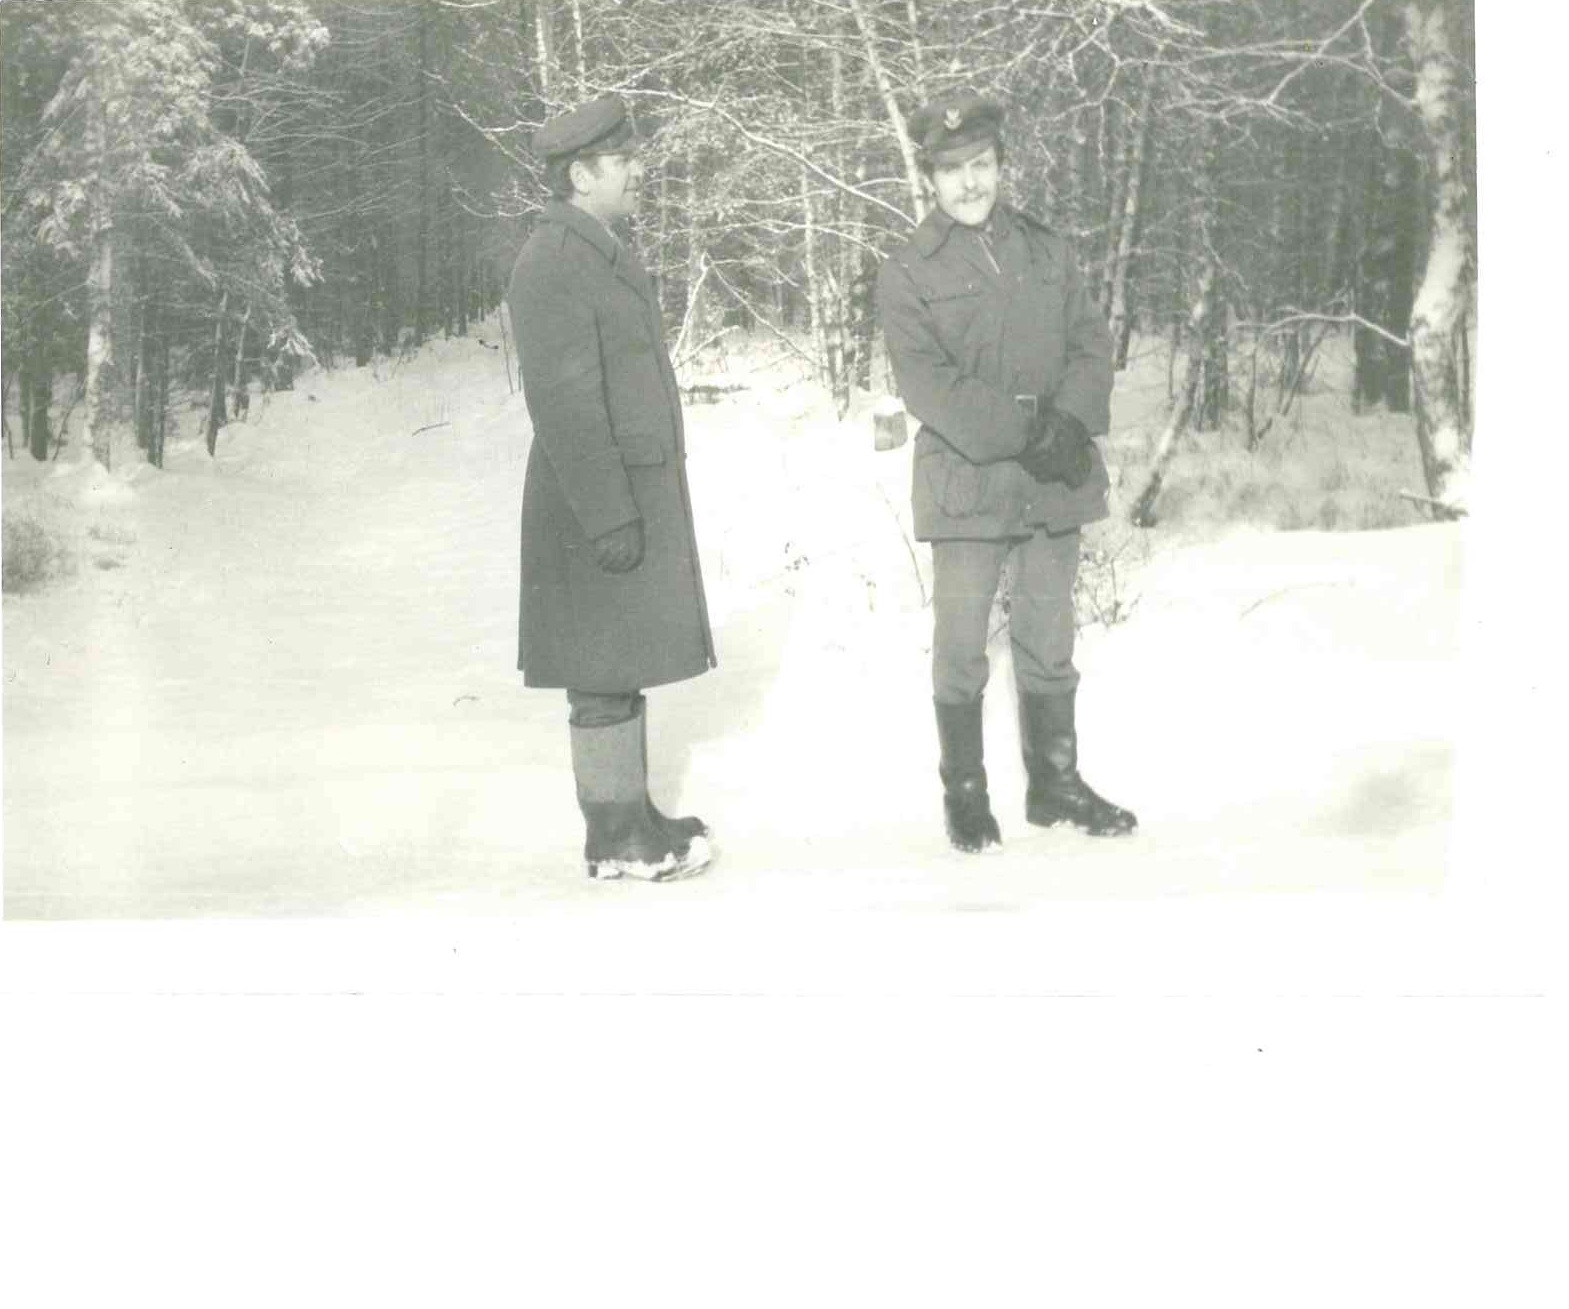 Zaczynając od lewej: Zdzisław Skwarczyński (były Komendant Straży Leśnej), Tadeusz Trafidło (były Strażnik Leśny) - lata 80. Udostępniła J. Fenczyszyn.